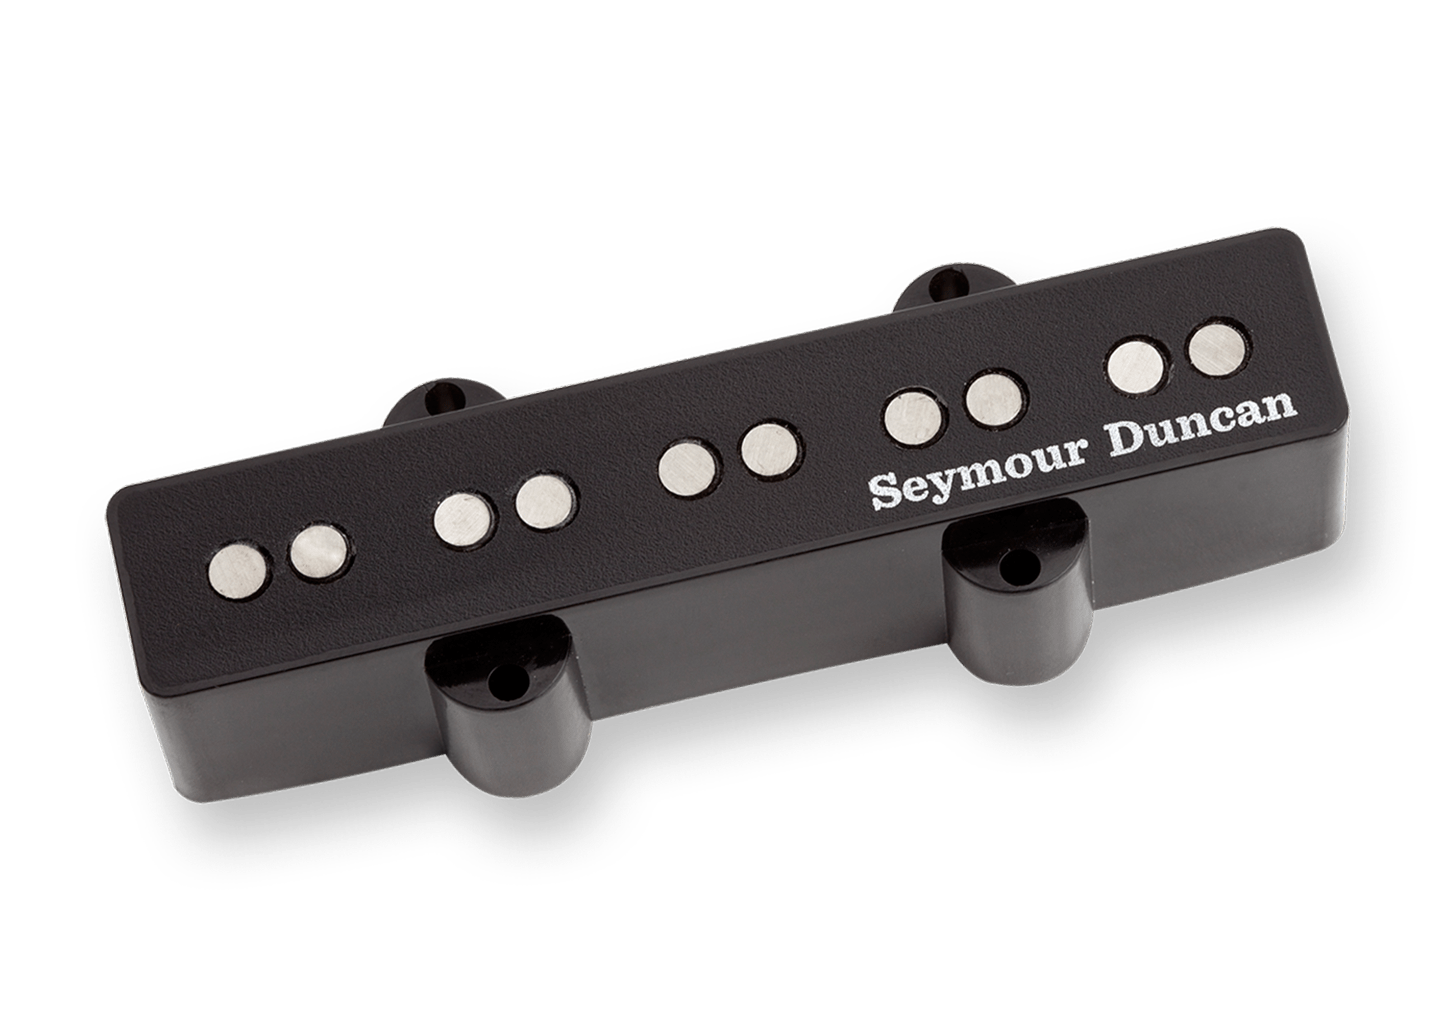 New Seymour Duncan Guitar Pickups Bass Pickups Men's Black T-Shirt Size S-3XL